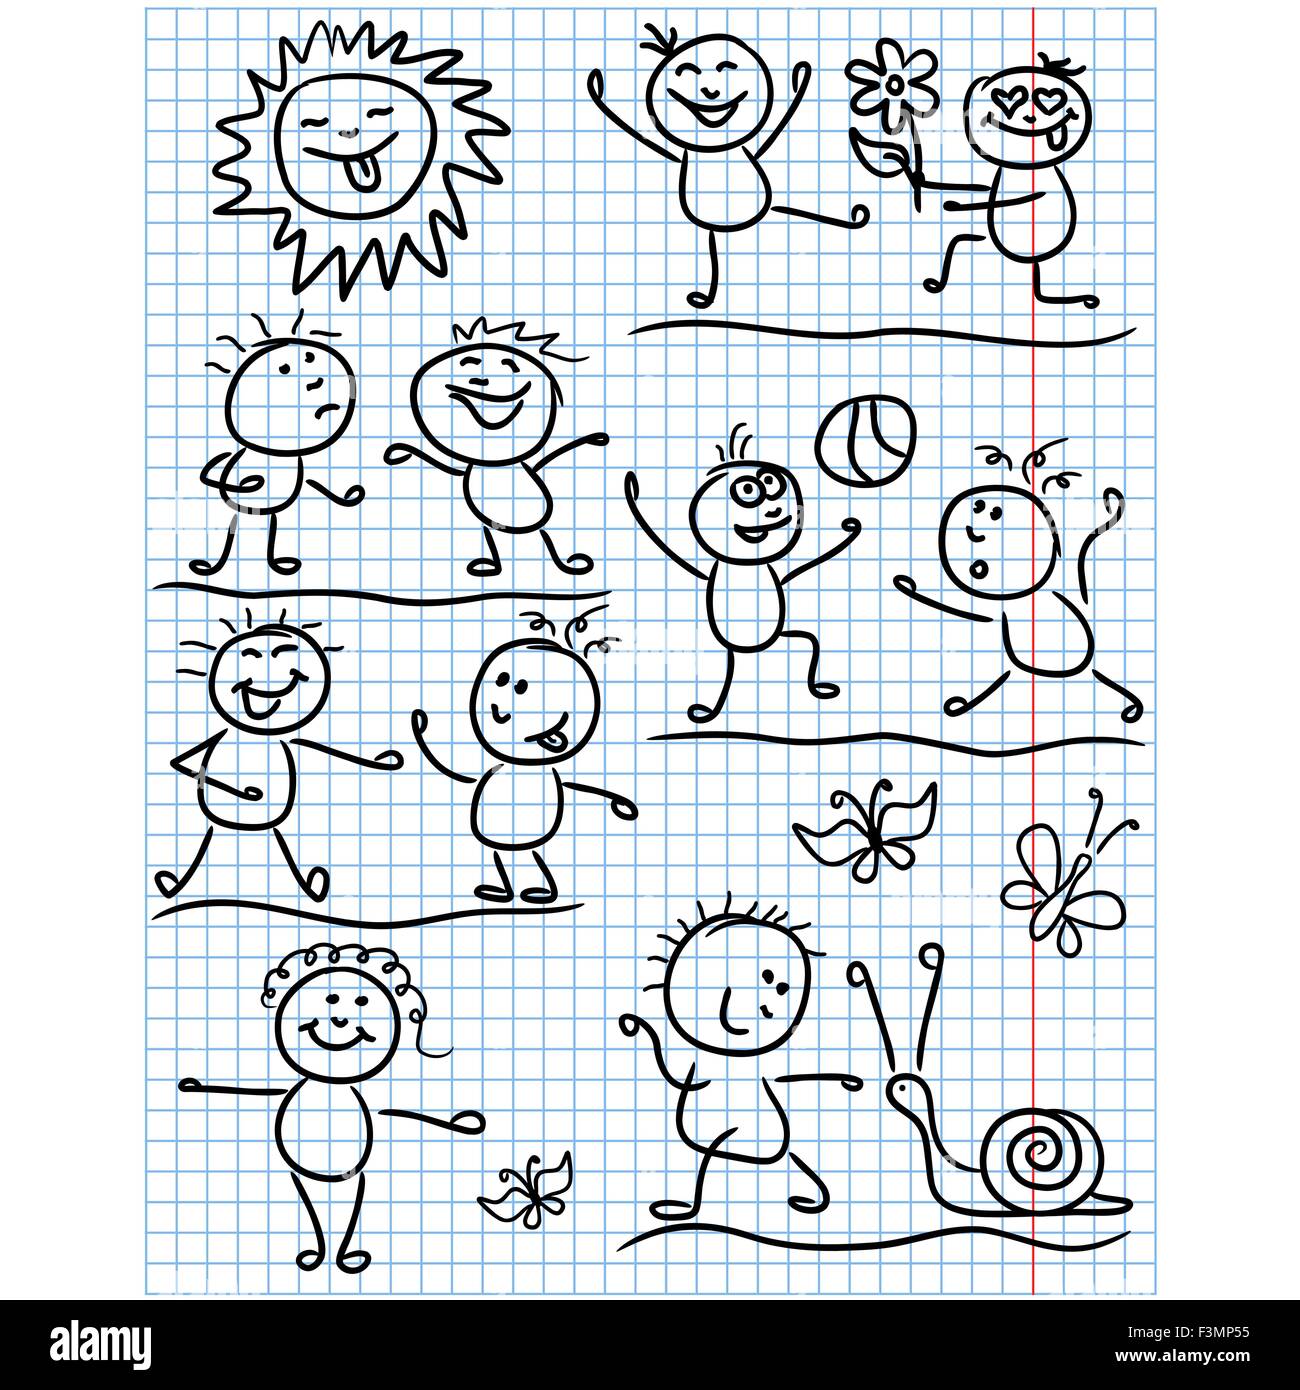 Amüsante lachende Sonne und Satz von mehreren Kind Zahlen in verschiedenen lustigen Szenen, skizzieren Cartoon Vektorgrafiken als kindisch Urlaubsziel Stock Vektor